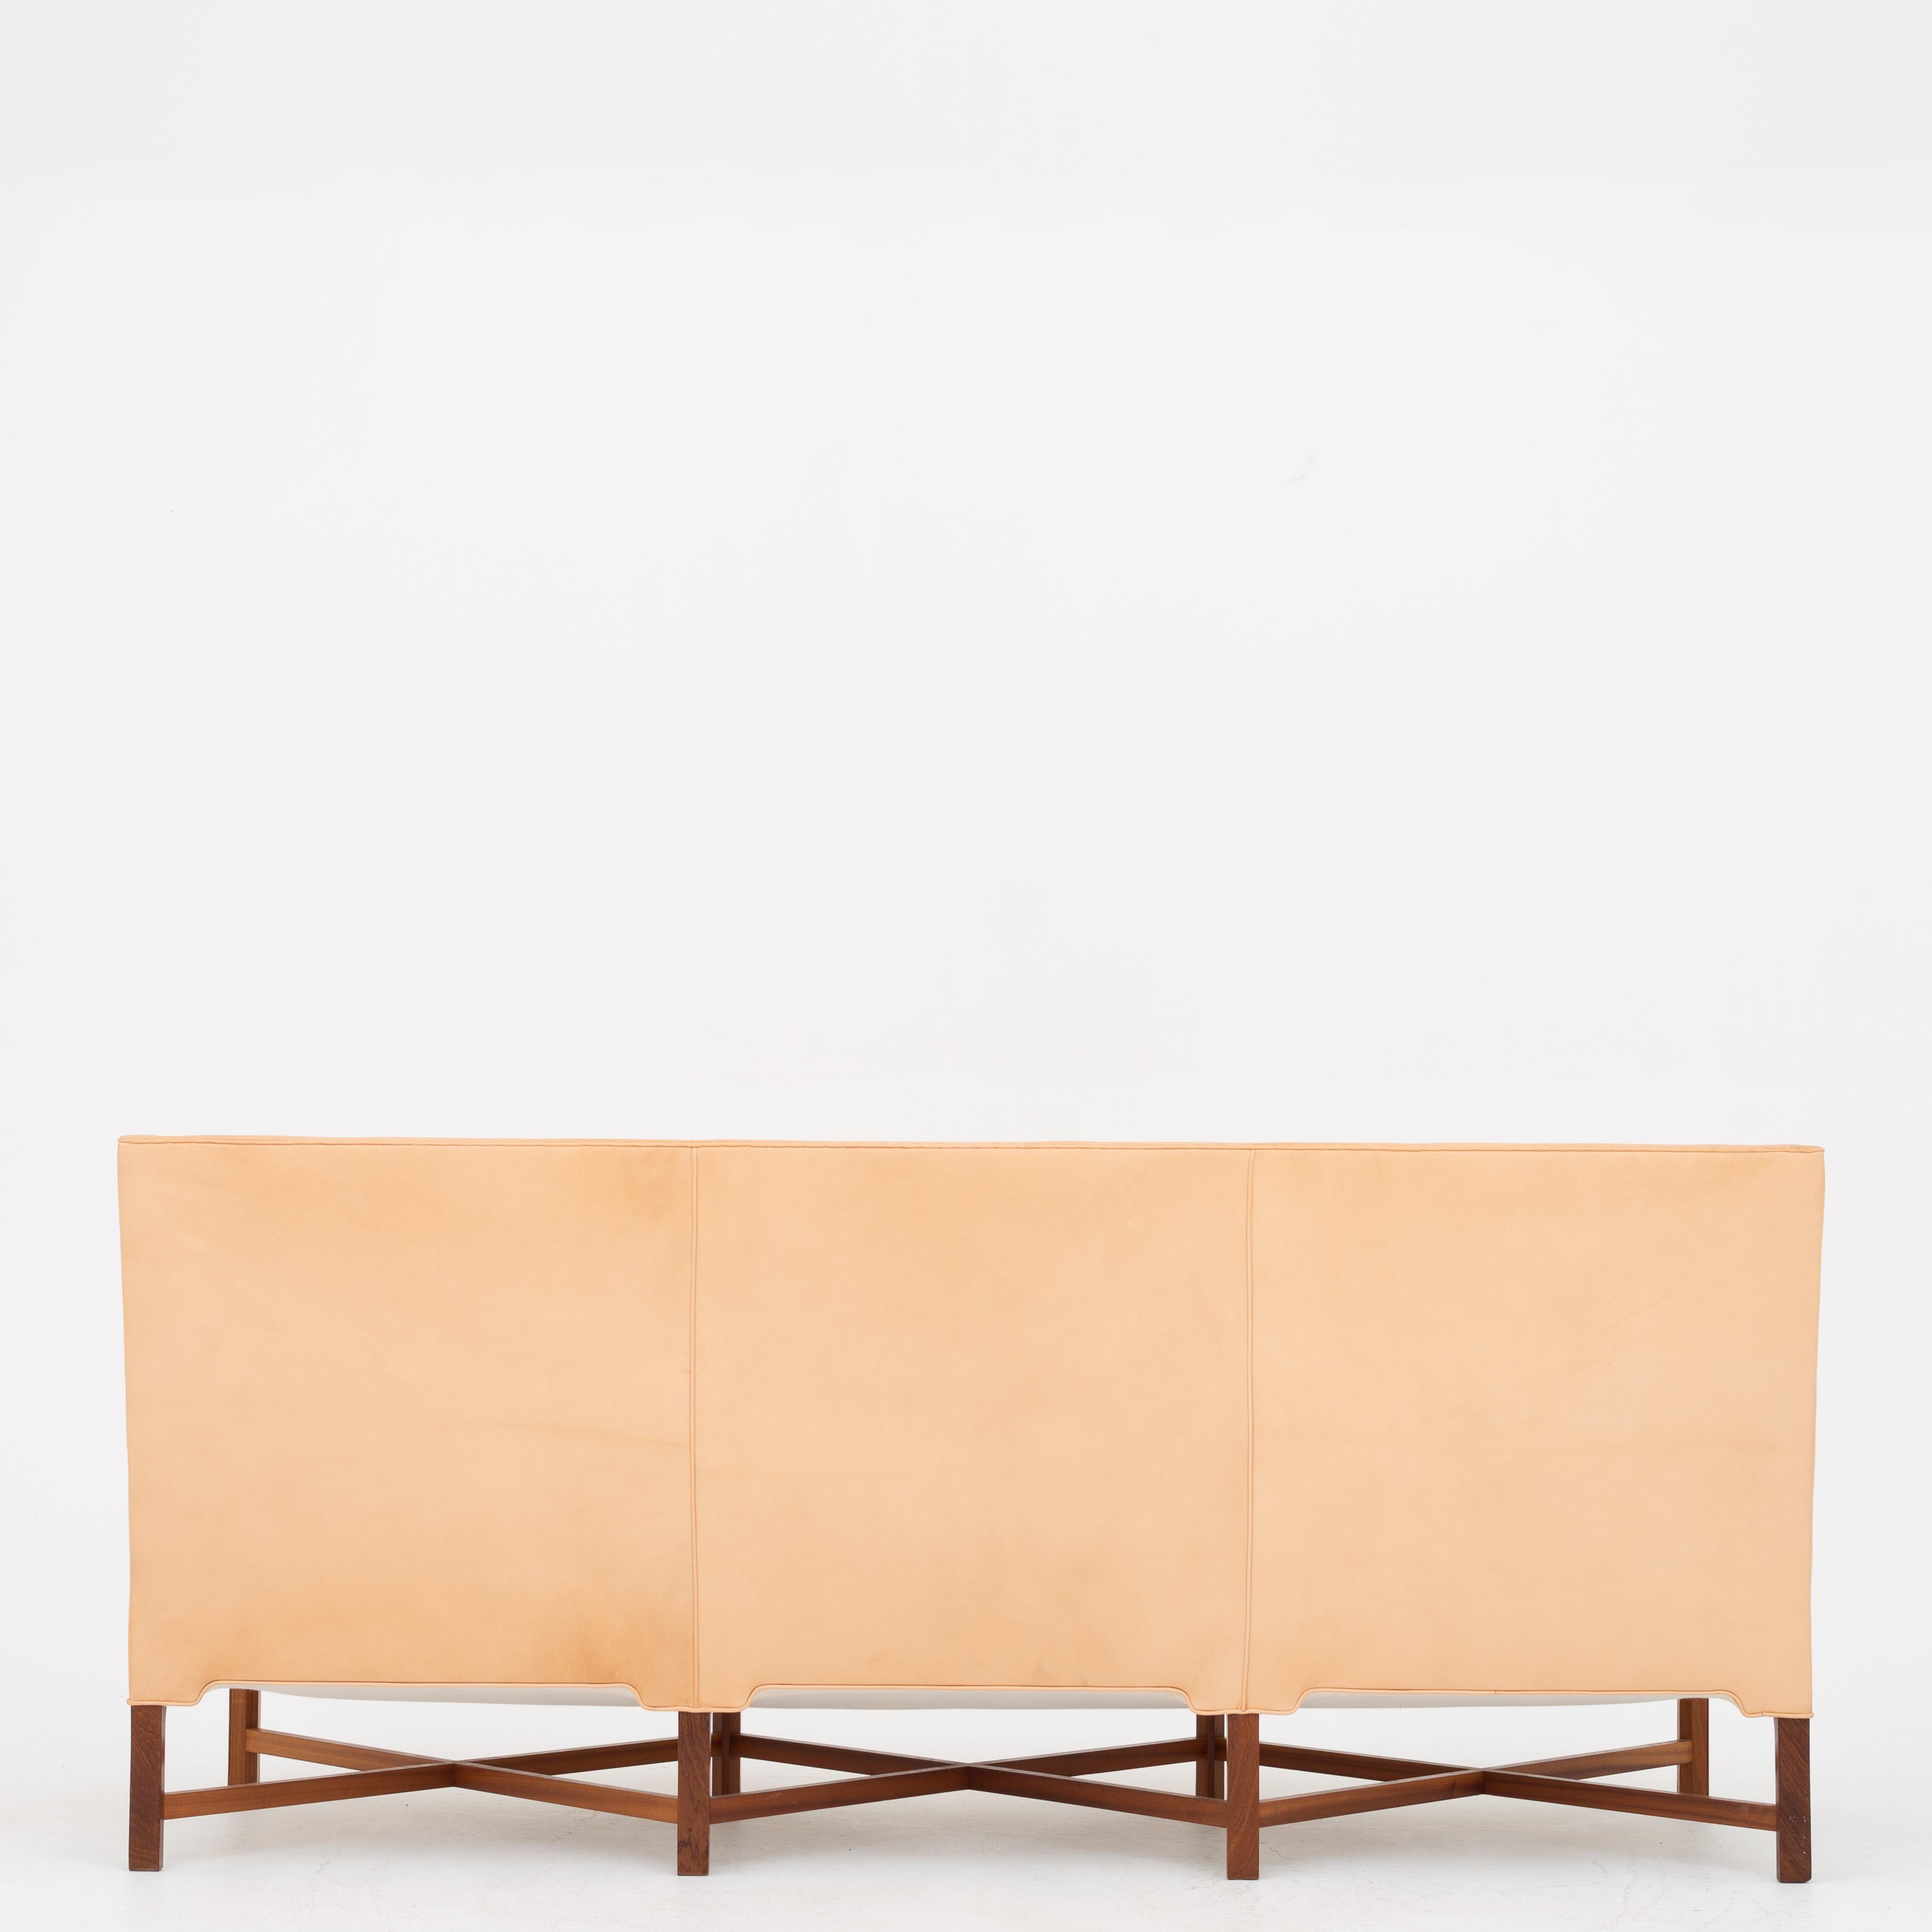 KK 4118, 3-sitziges Sofa mit gekreuzten Beinen aus massivem Mahagoni und neuem Nigerleder. Entworfen im Jahr 1929. Schöpfer Rud. Rasmussen.